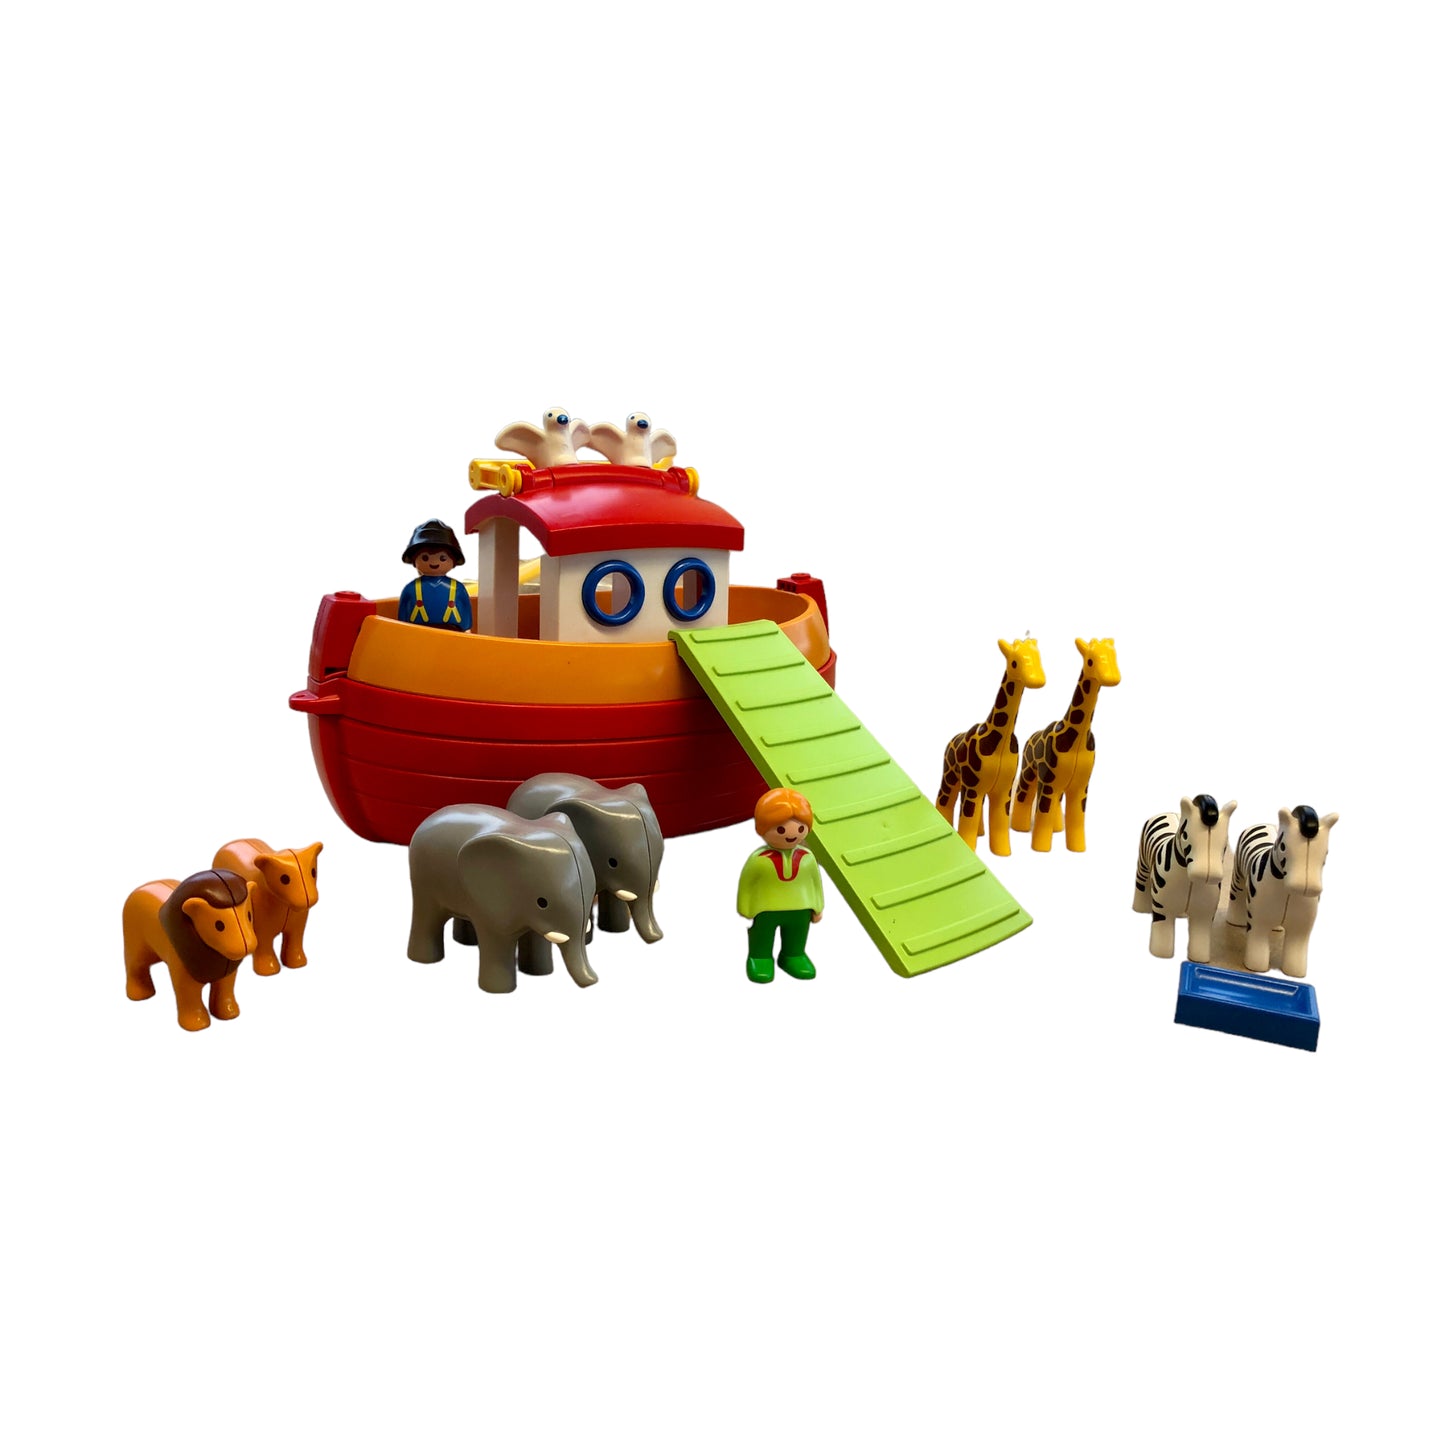 Playmobil ® 123 - 6765 Noah's Arch